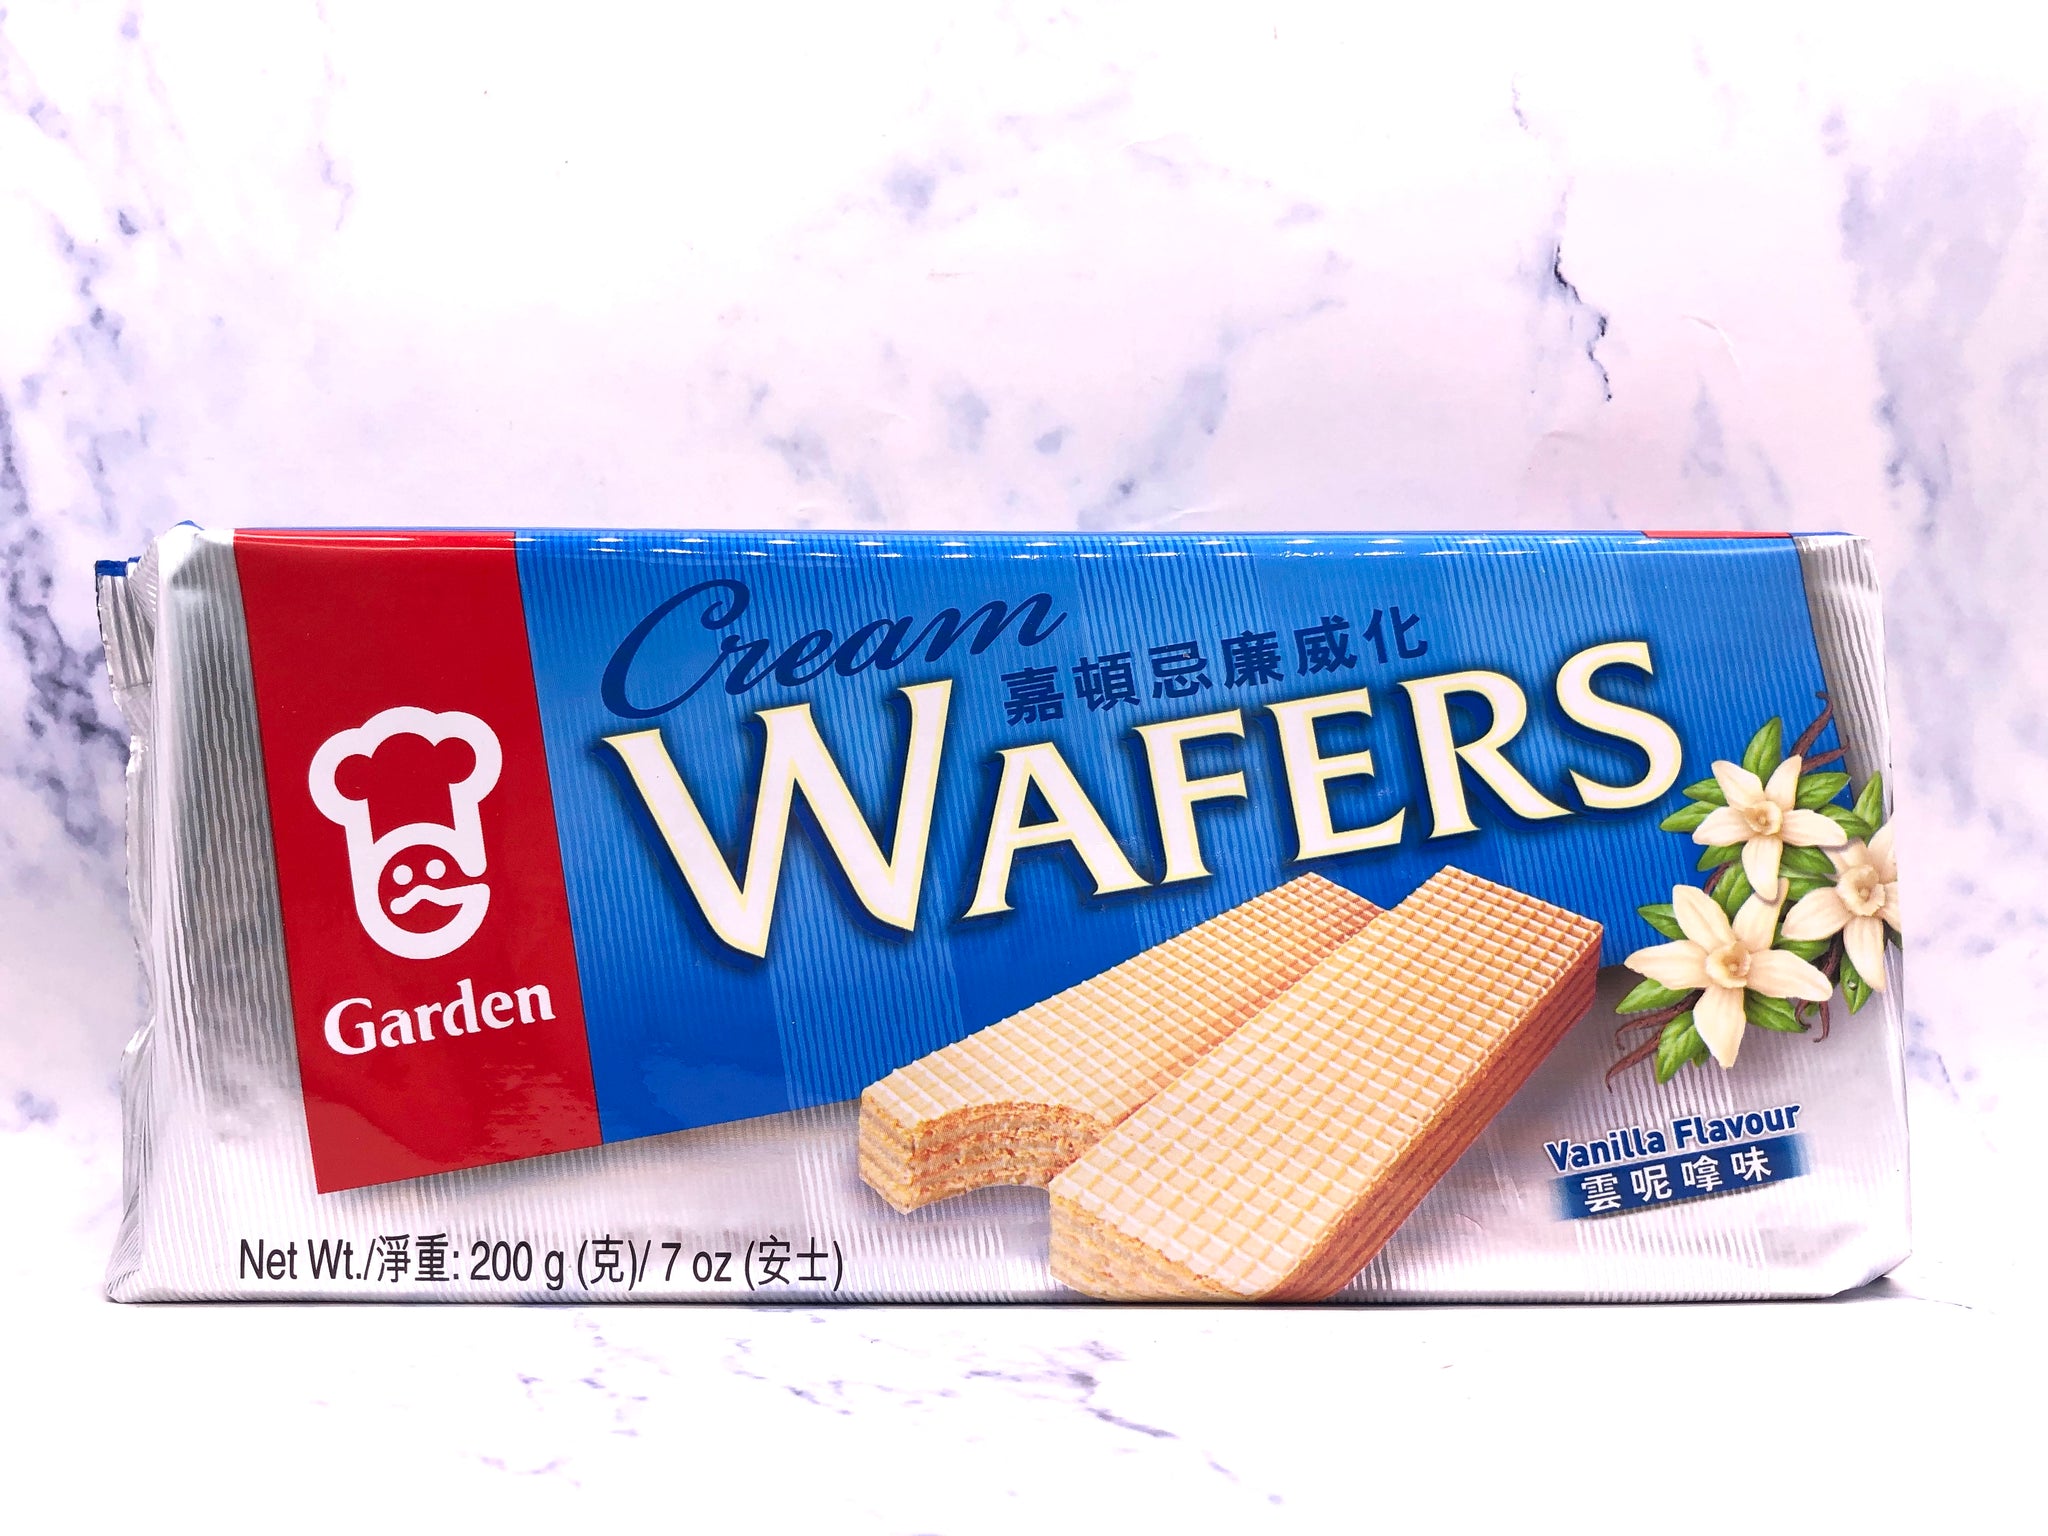 嘉顿香草味威化饼 Garden Cream Wafer Vanilla